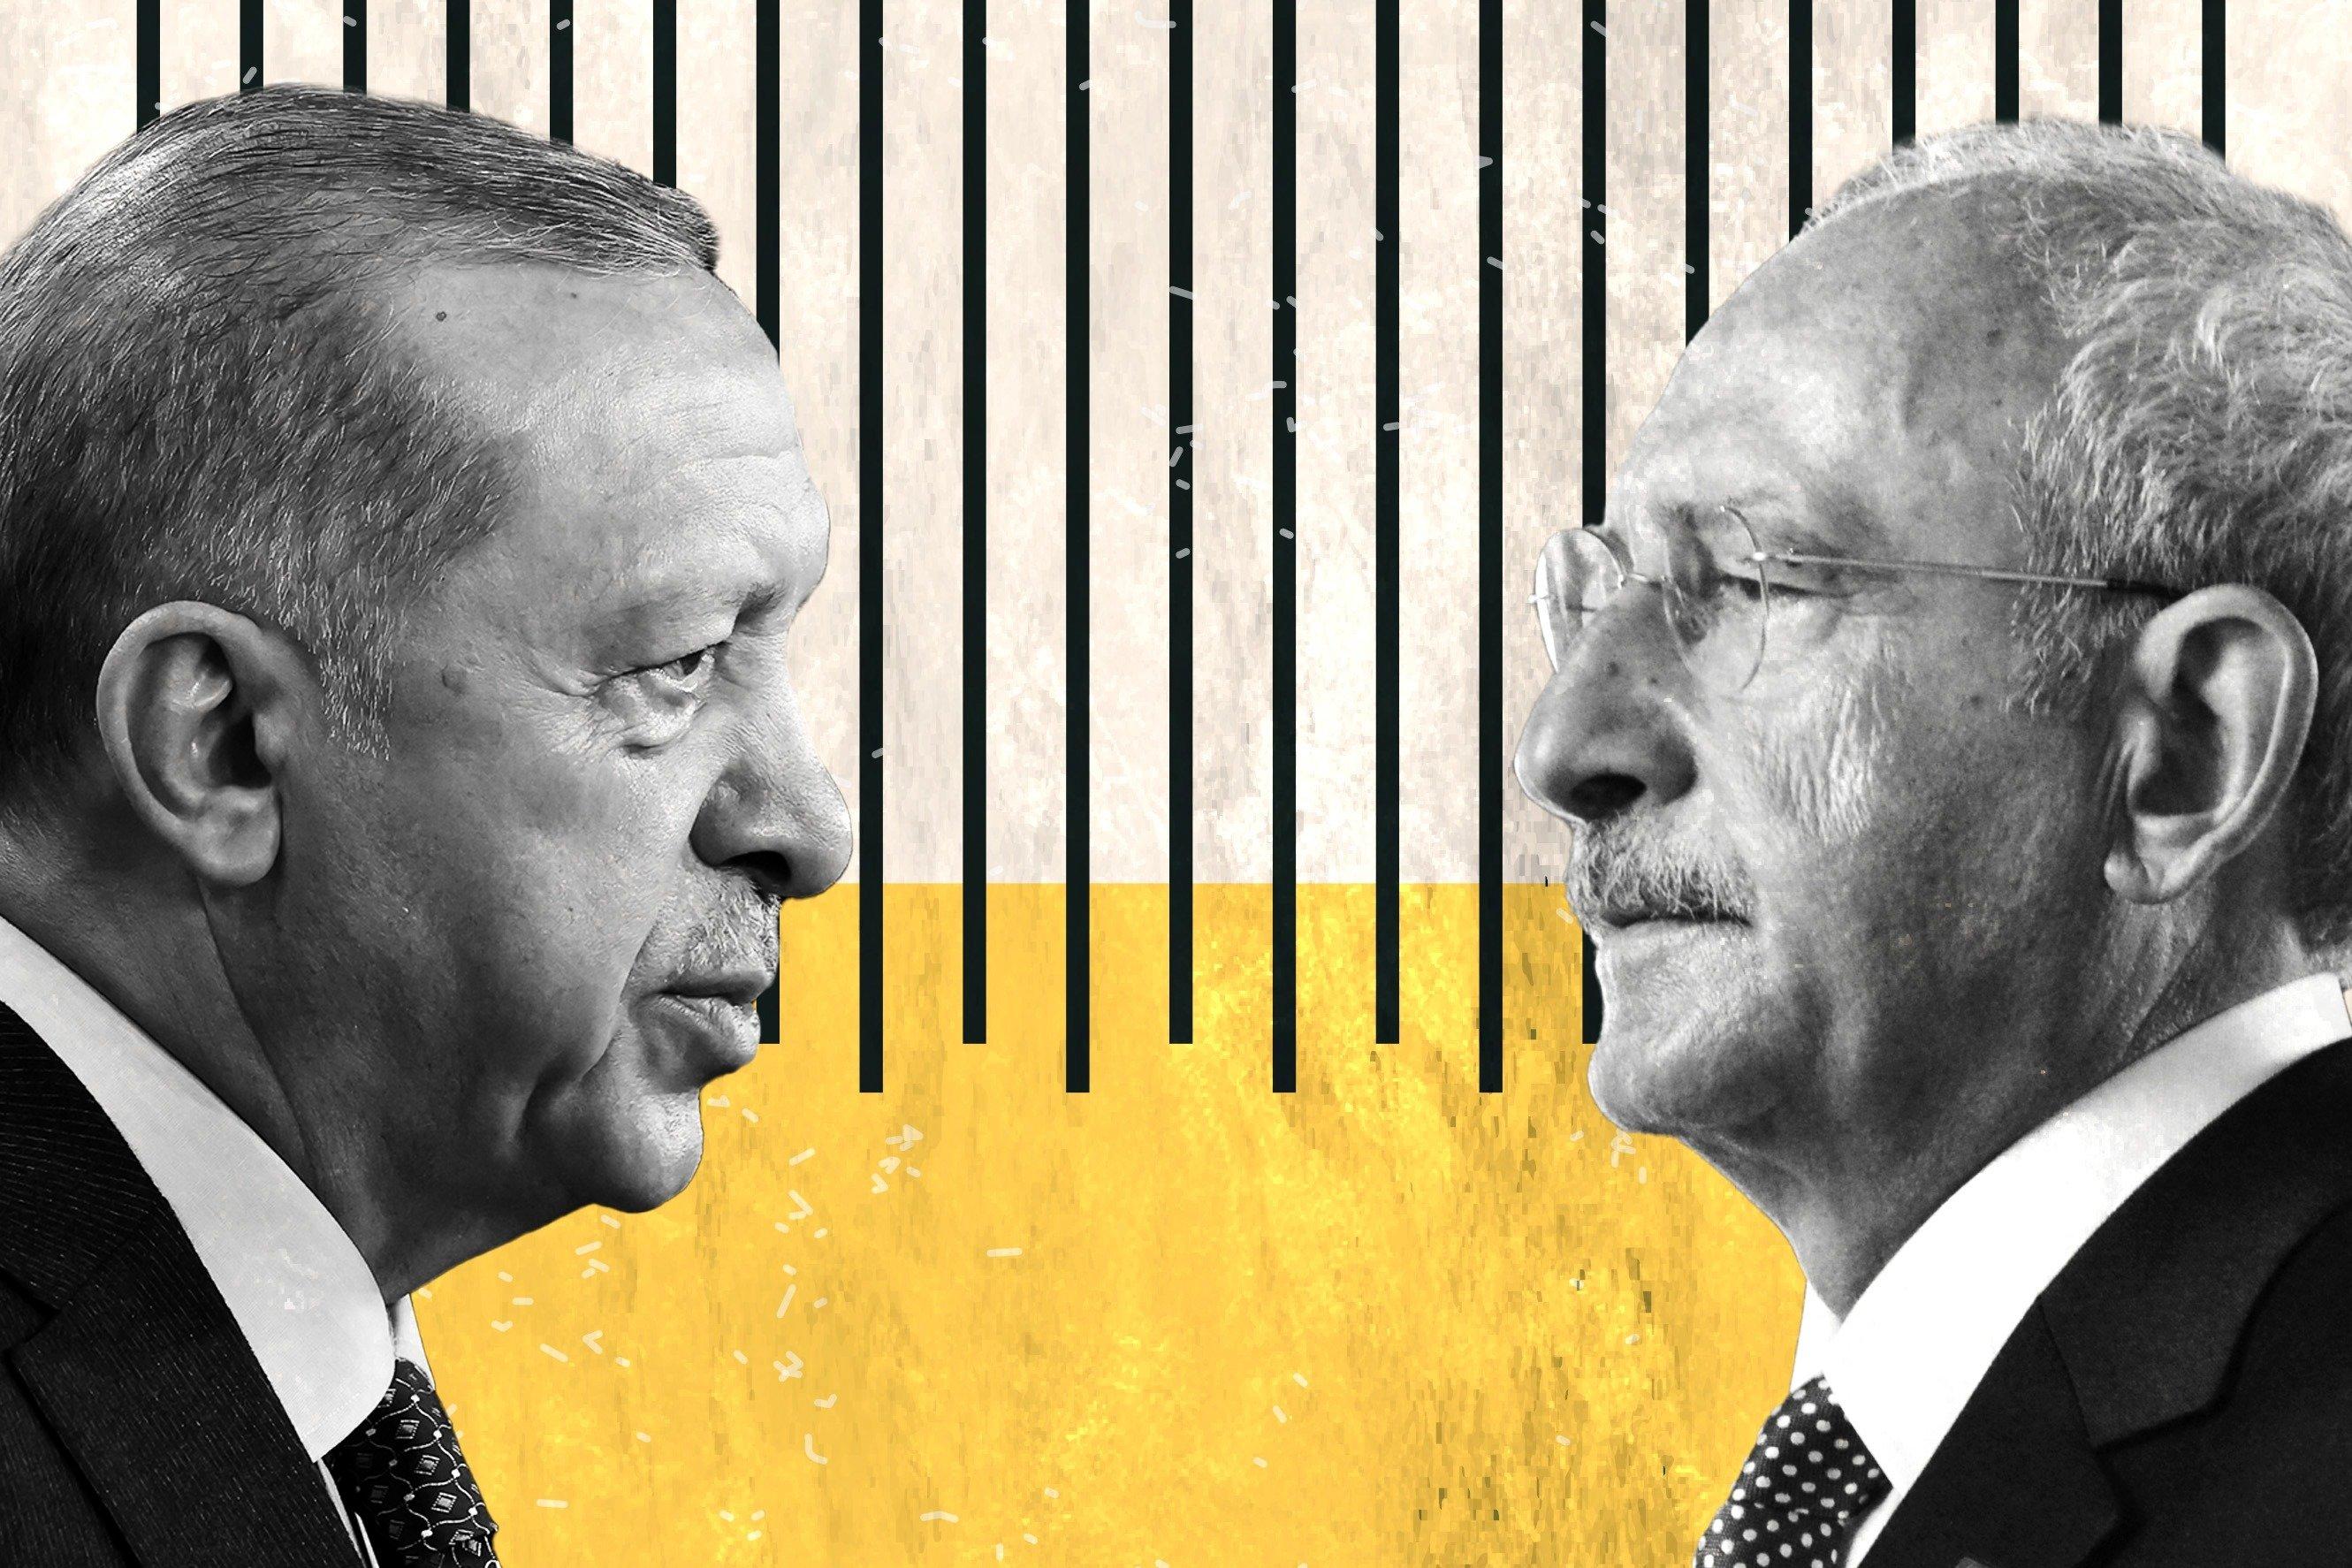 وضعیت عجیب اردوغان و یک مرد در انتخابات ترکیه خبرساز شد + فیلم
